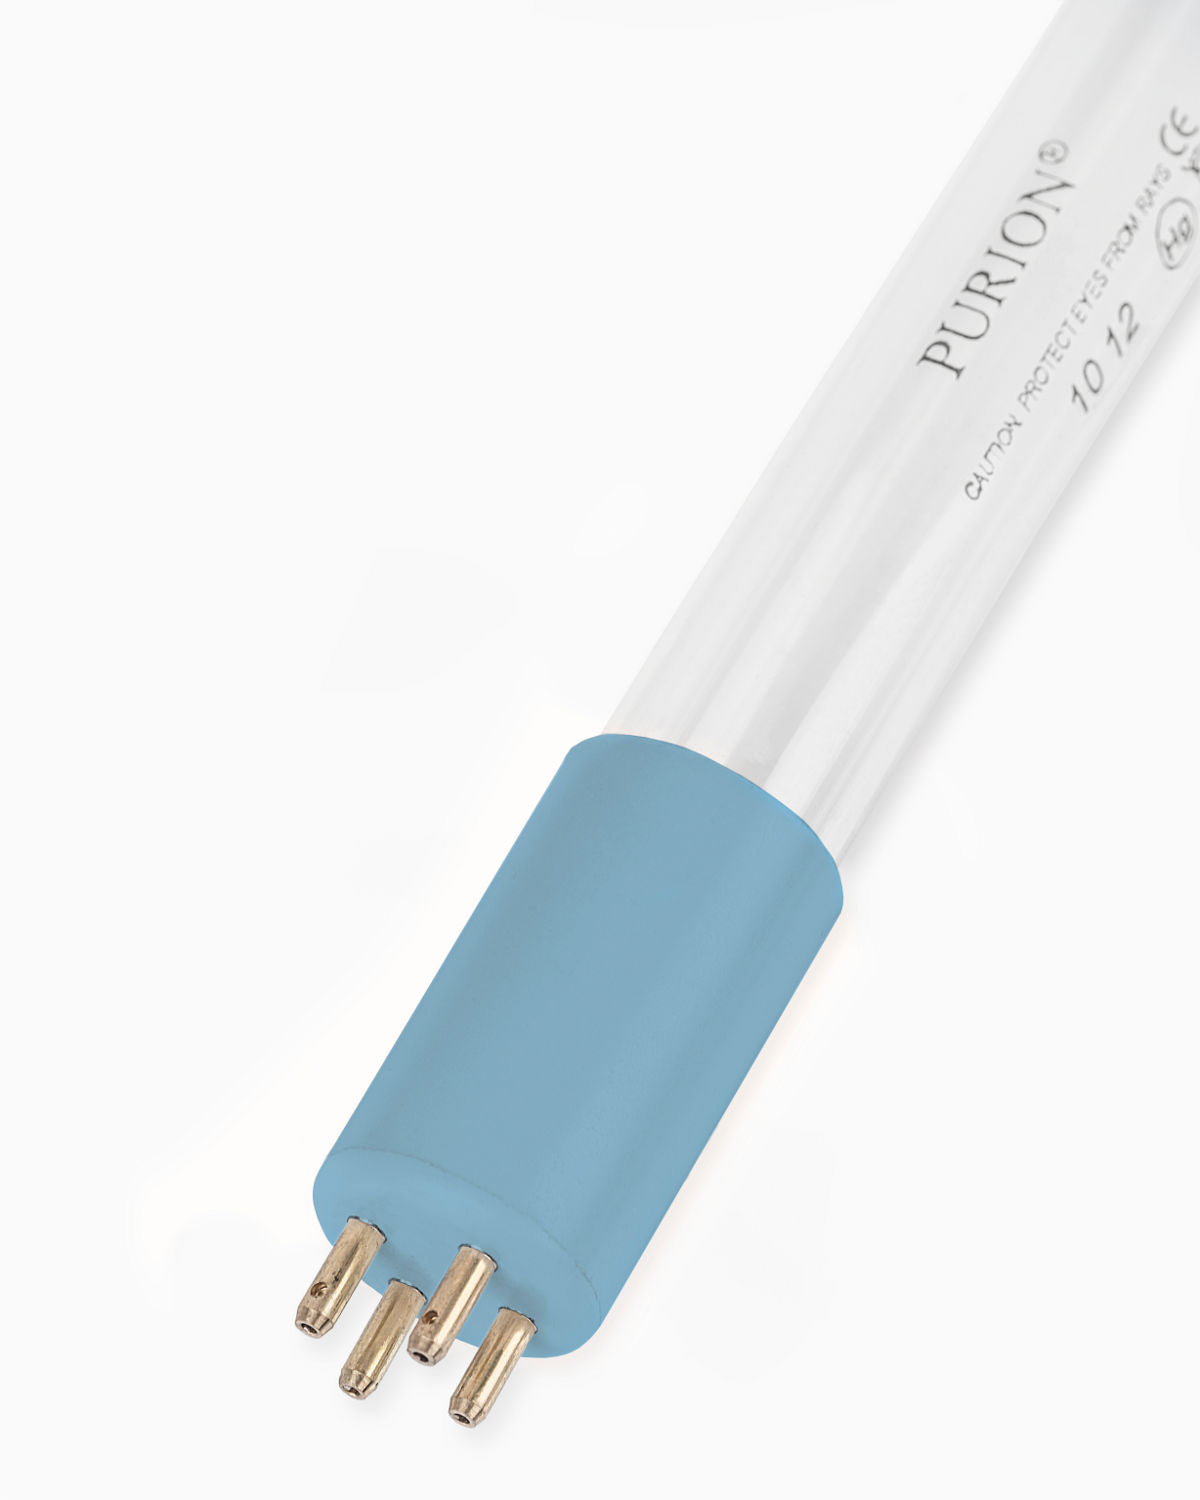 Eine PURION 2500 36W UV-C-Desinfektionsanlage, die eine blaue Lichtröhre auf weißem Hintergrund ausstrahlt. (Produkt: PURION 2500 36 W 110 - 240 V AC ESM, Marke: PURION GmbH)